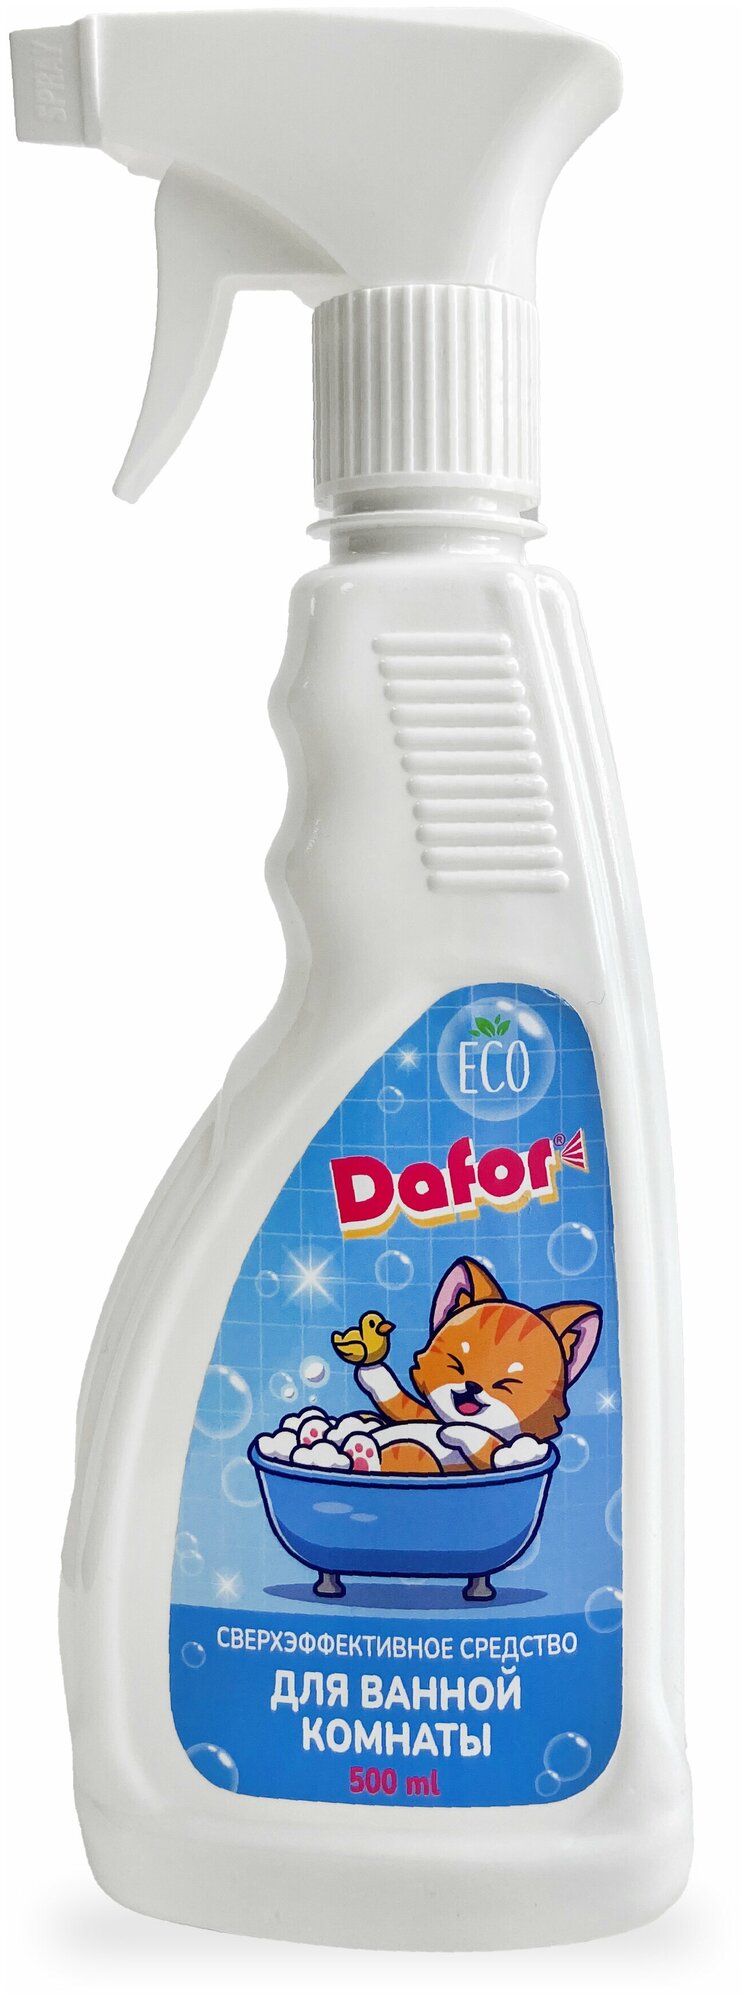 Сверхэффективное чистящее средство для ванной комнаты и туалета Dafor 500 мл